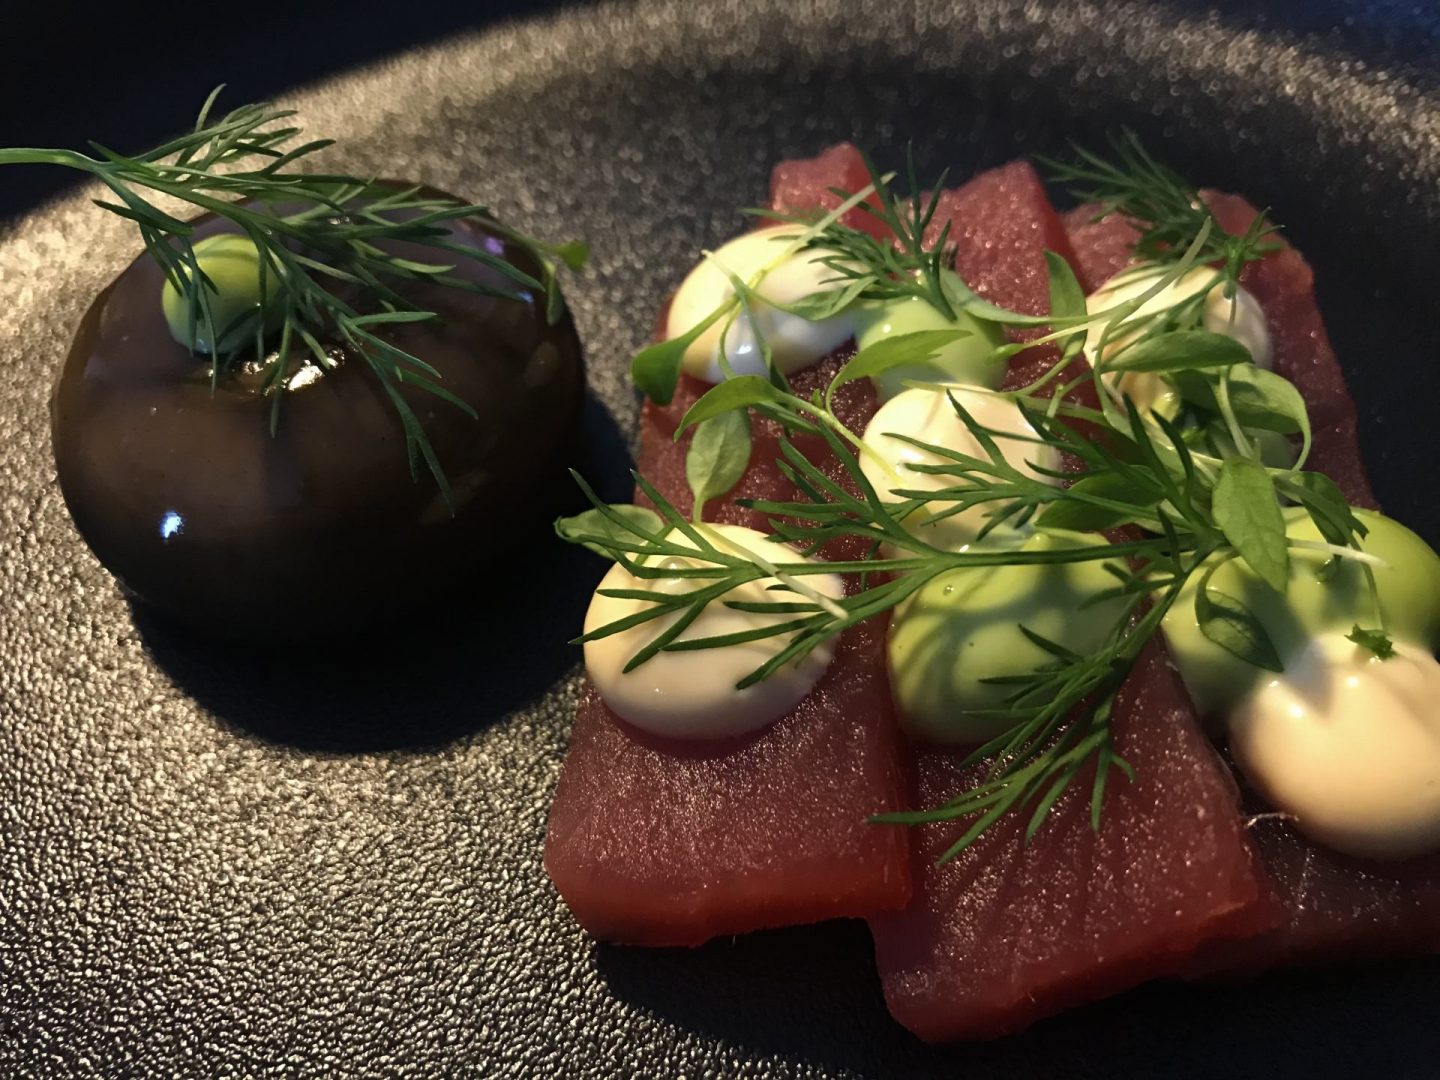 Erfahrung Bewertung Kritik Ostermenü Kulinarik2Go Hannappel Thunfisch Sashimi Foodblog Sternestulle